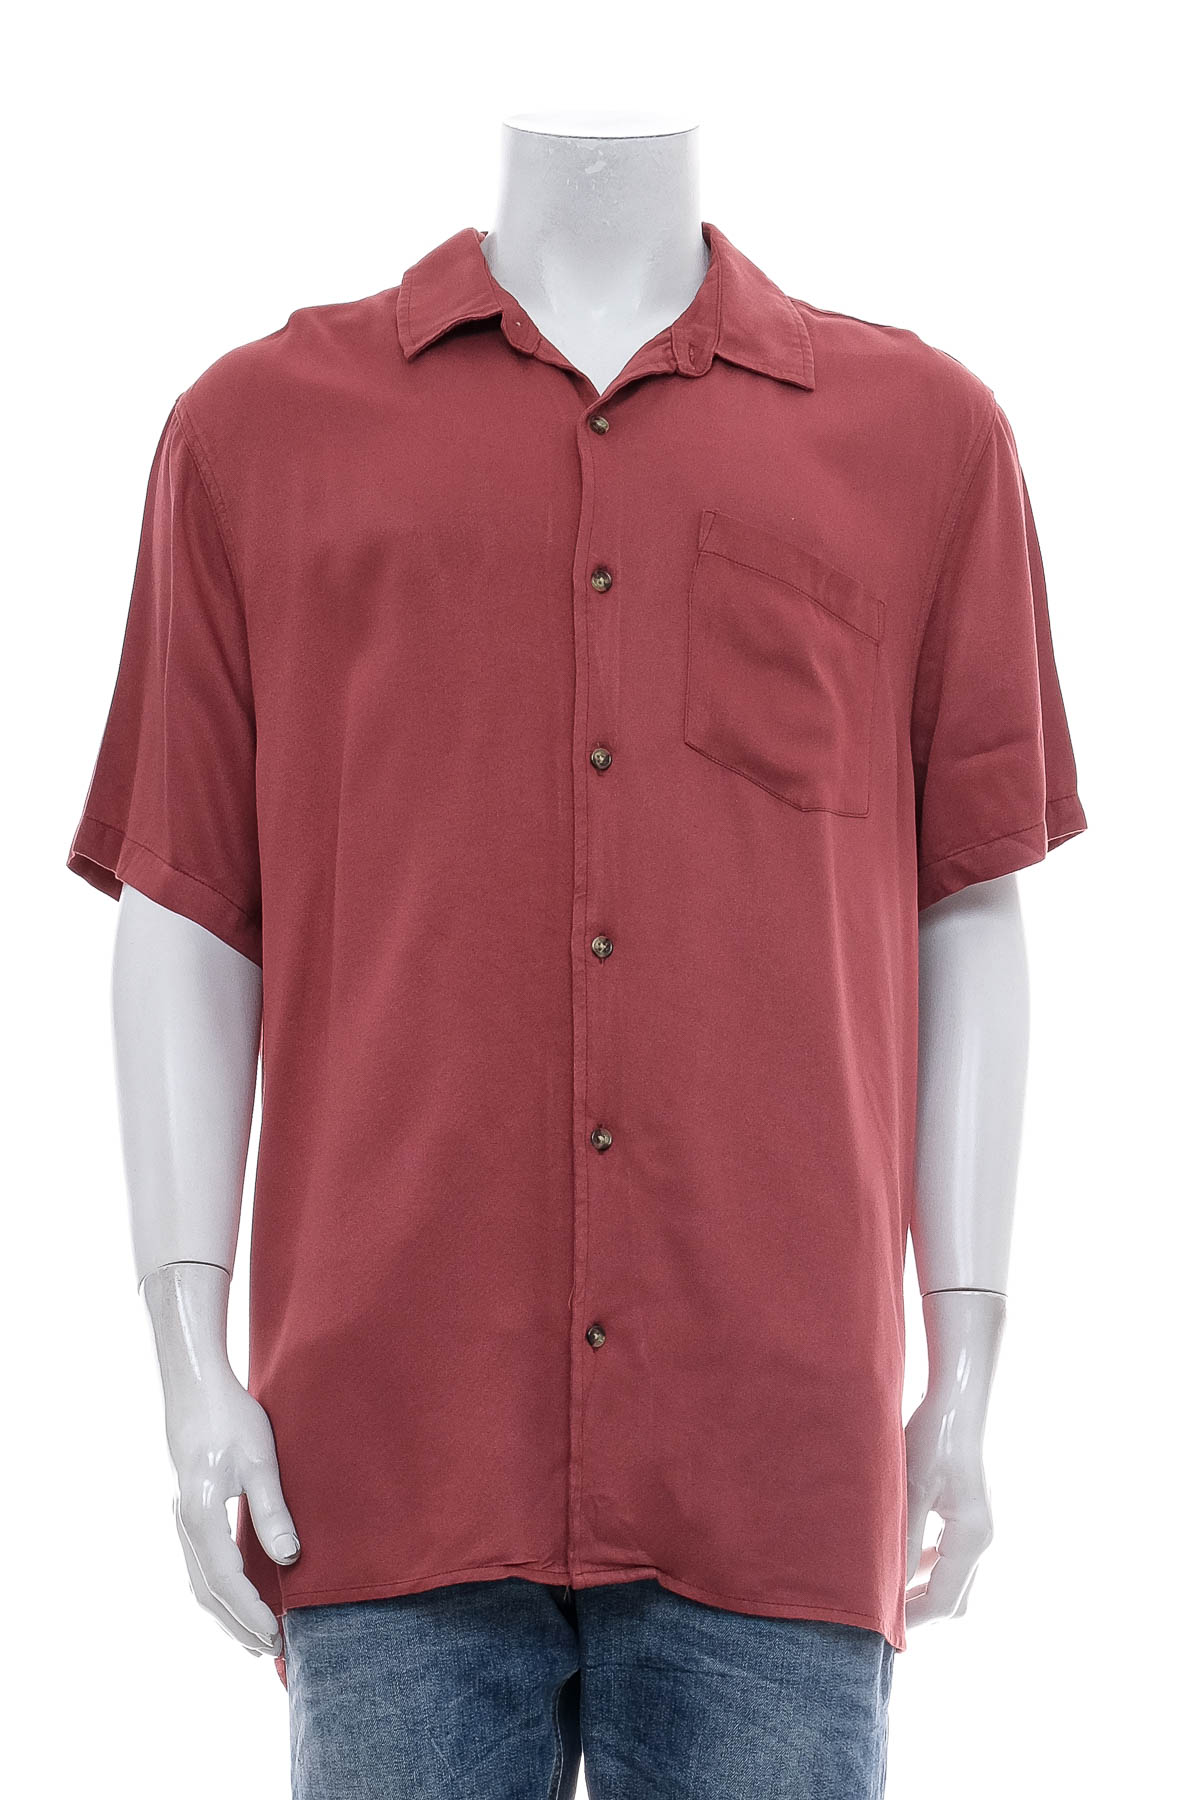 Ανδρικό πουκάμισο - Factorie - 0